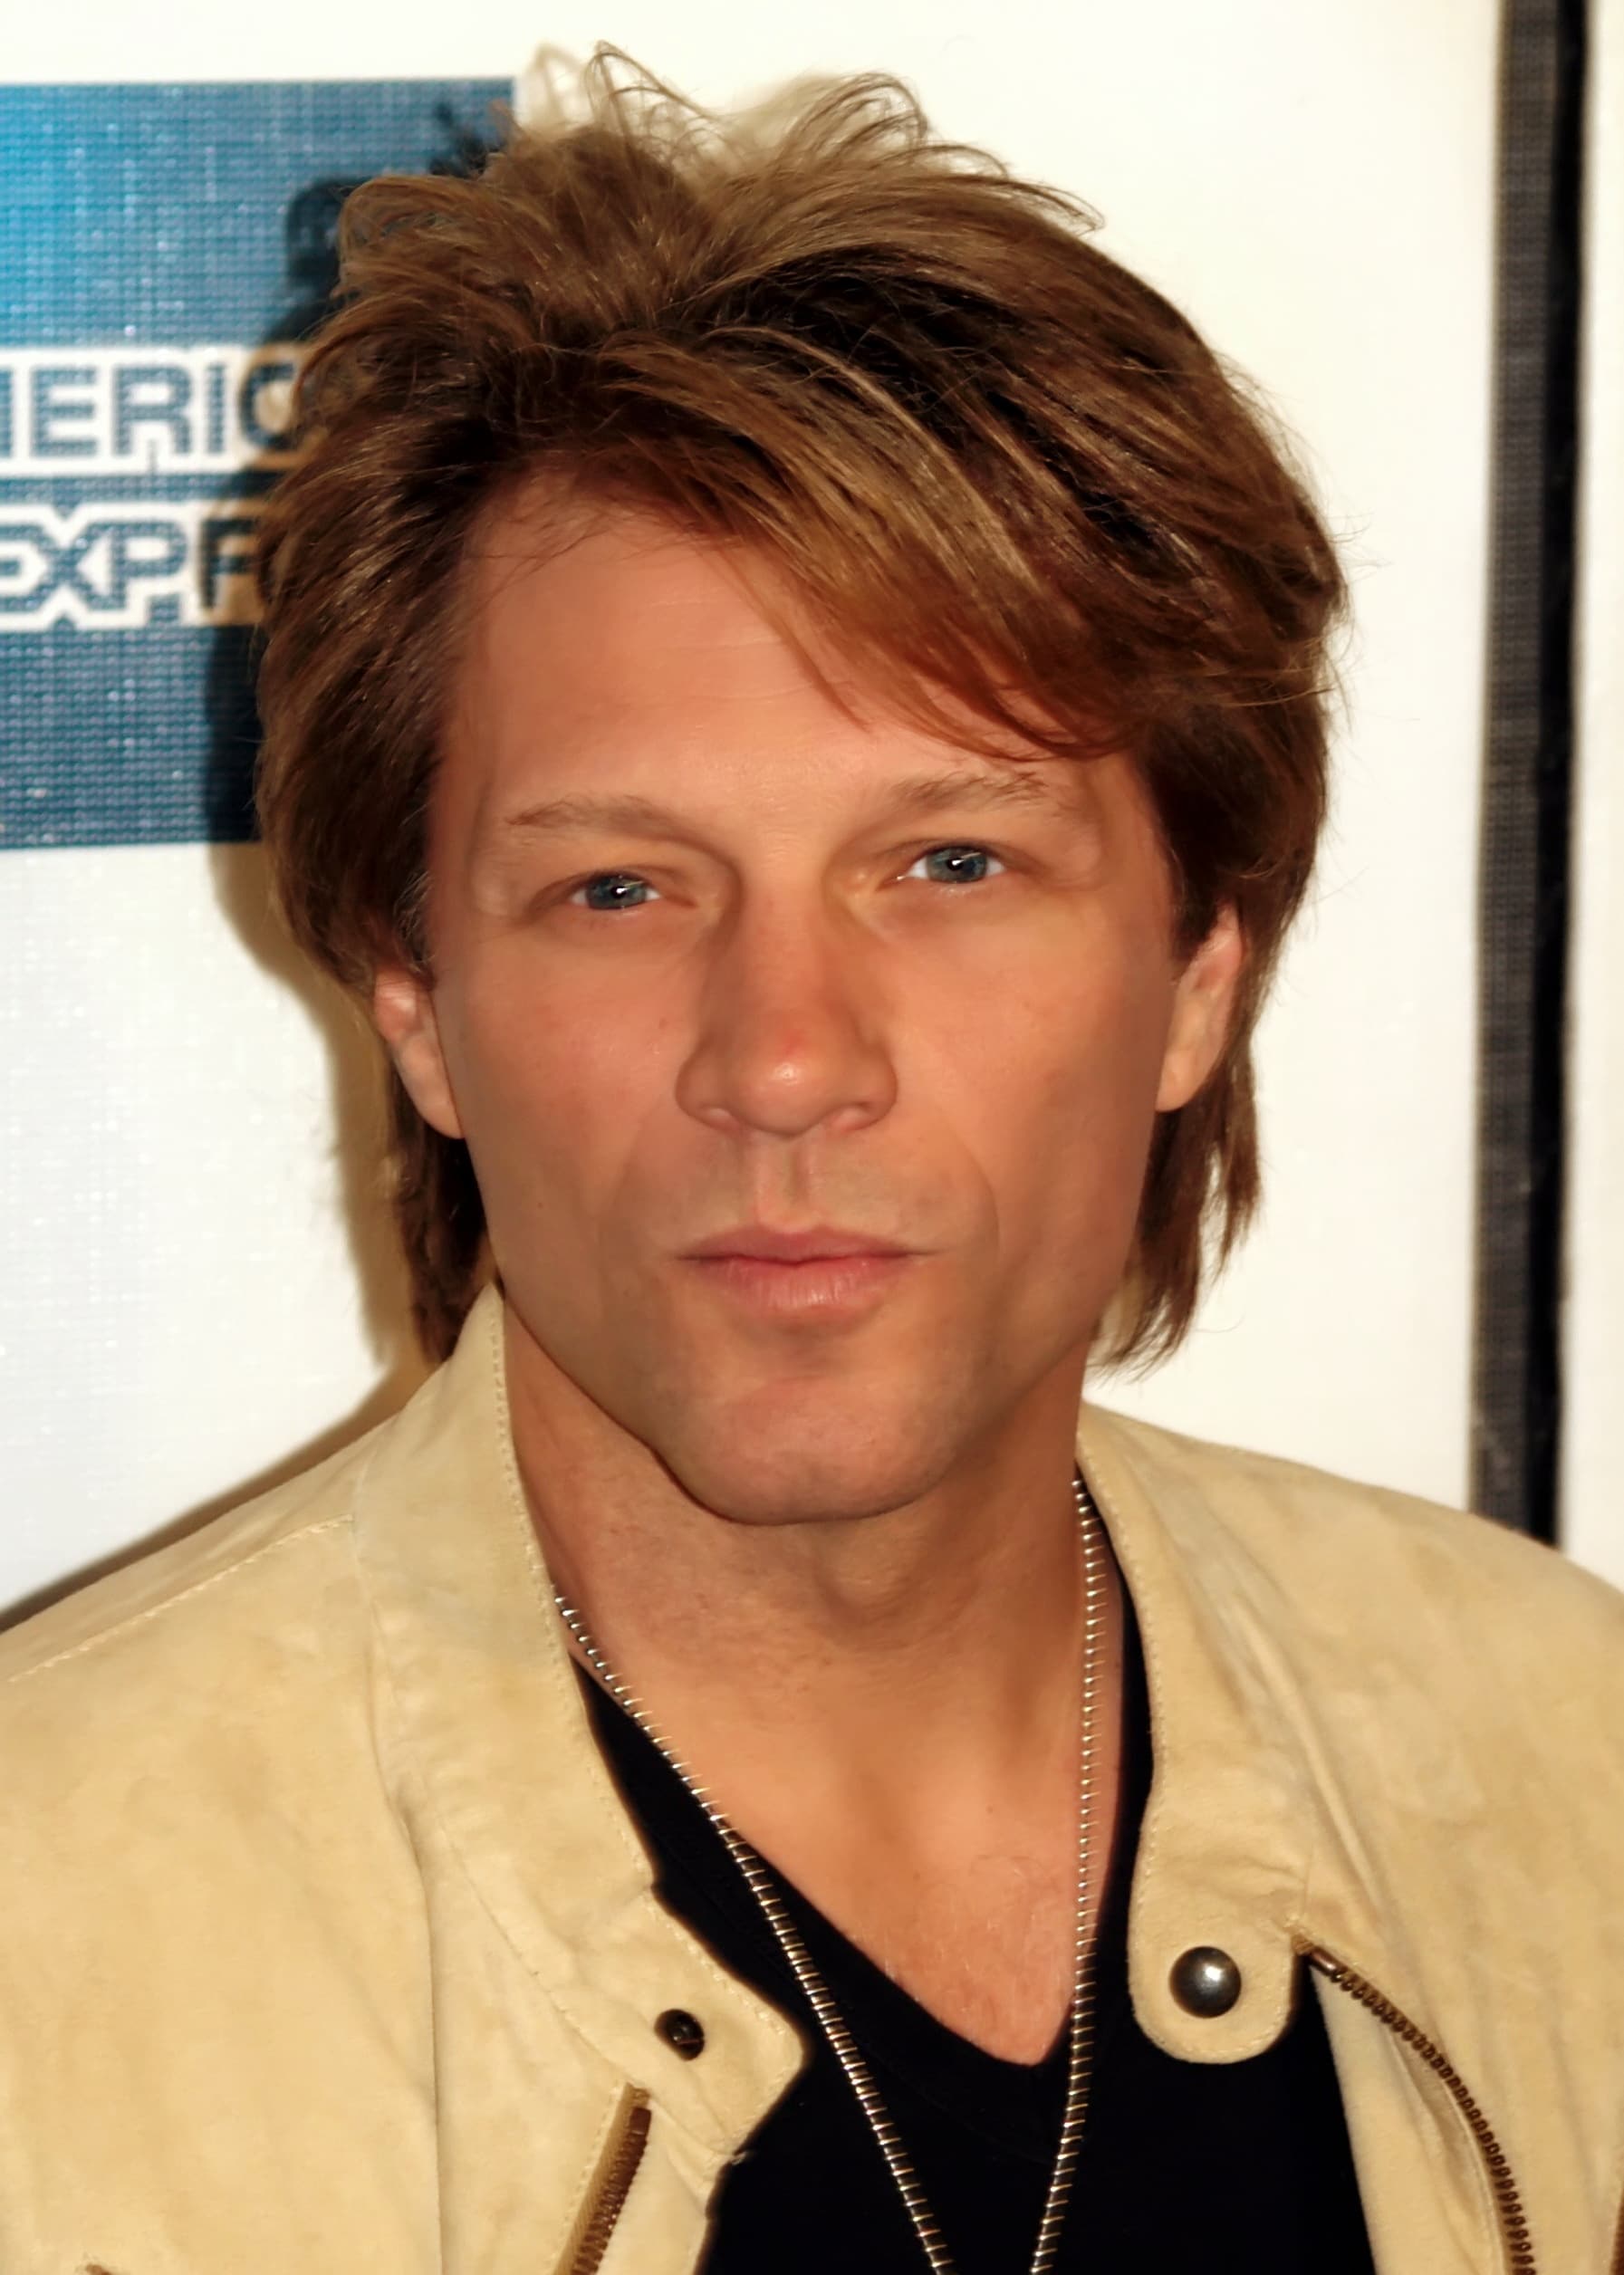 Jon Bon Jovi Smile